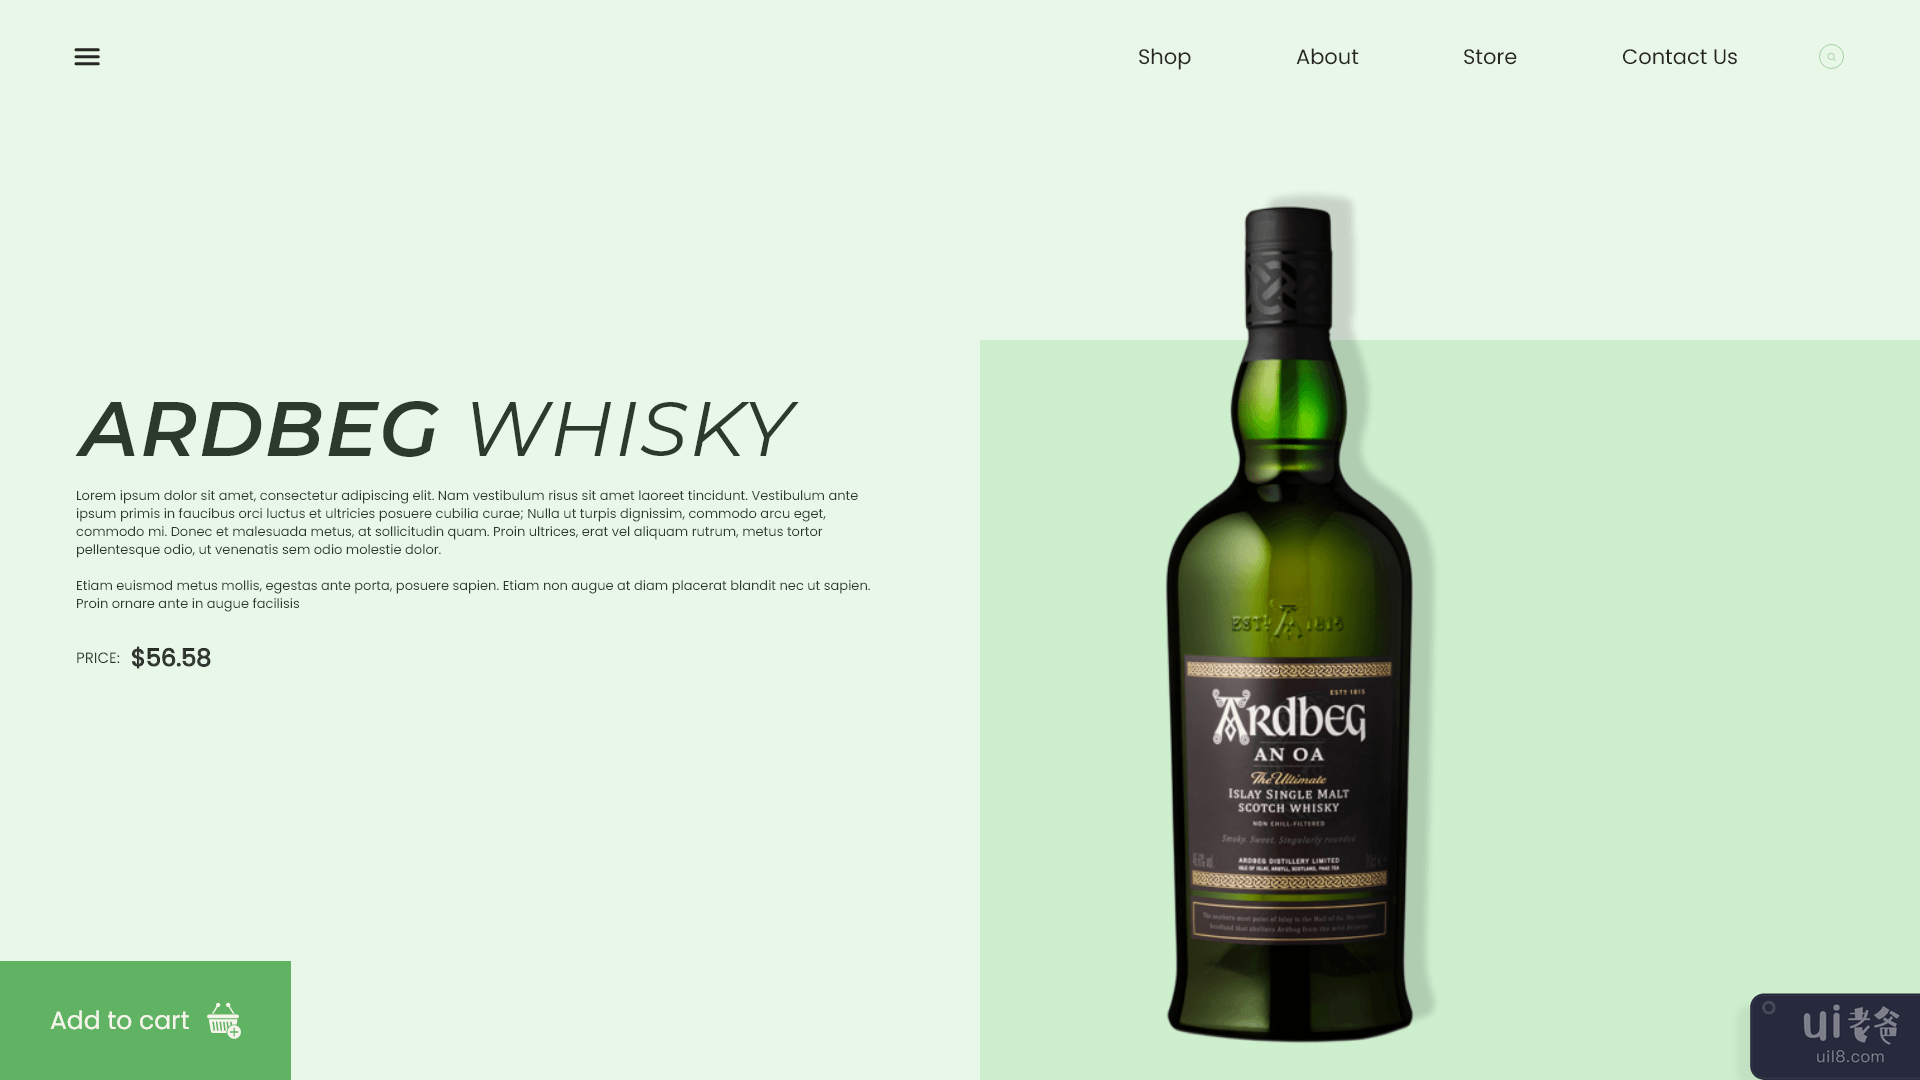 ARDBEG 威士忌 - 网上商店(ARDBEG Whisky - Web shop)插图